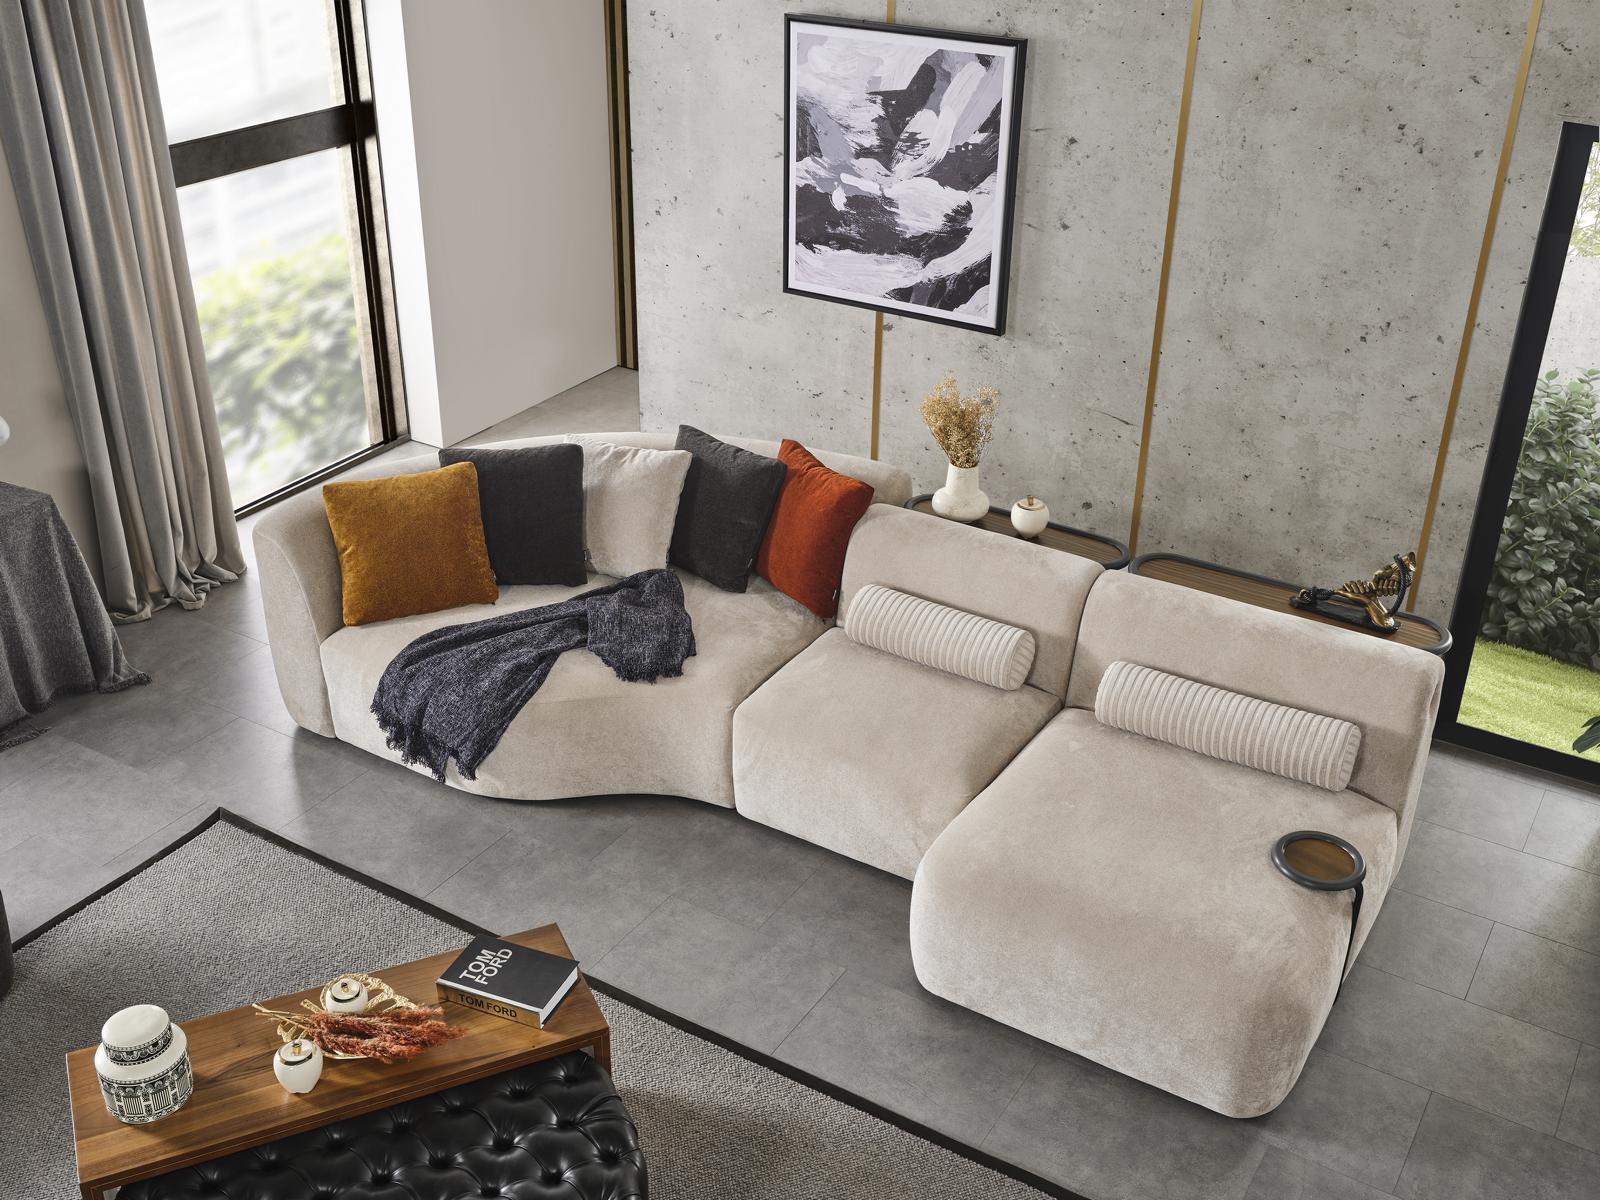 Ecksofa L Form Design Couch Holz mit Textil Polster neu Möbel weiß